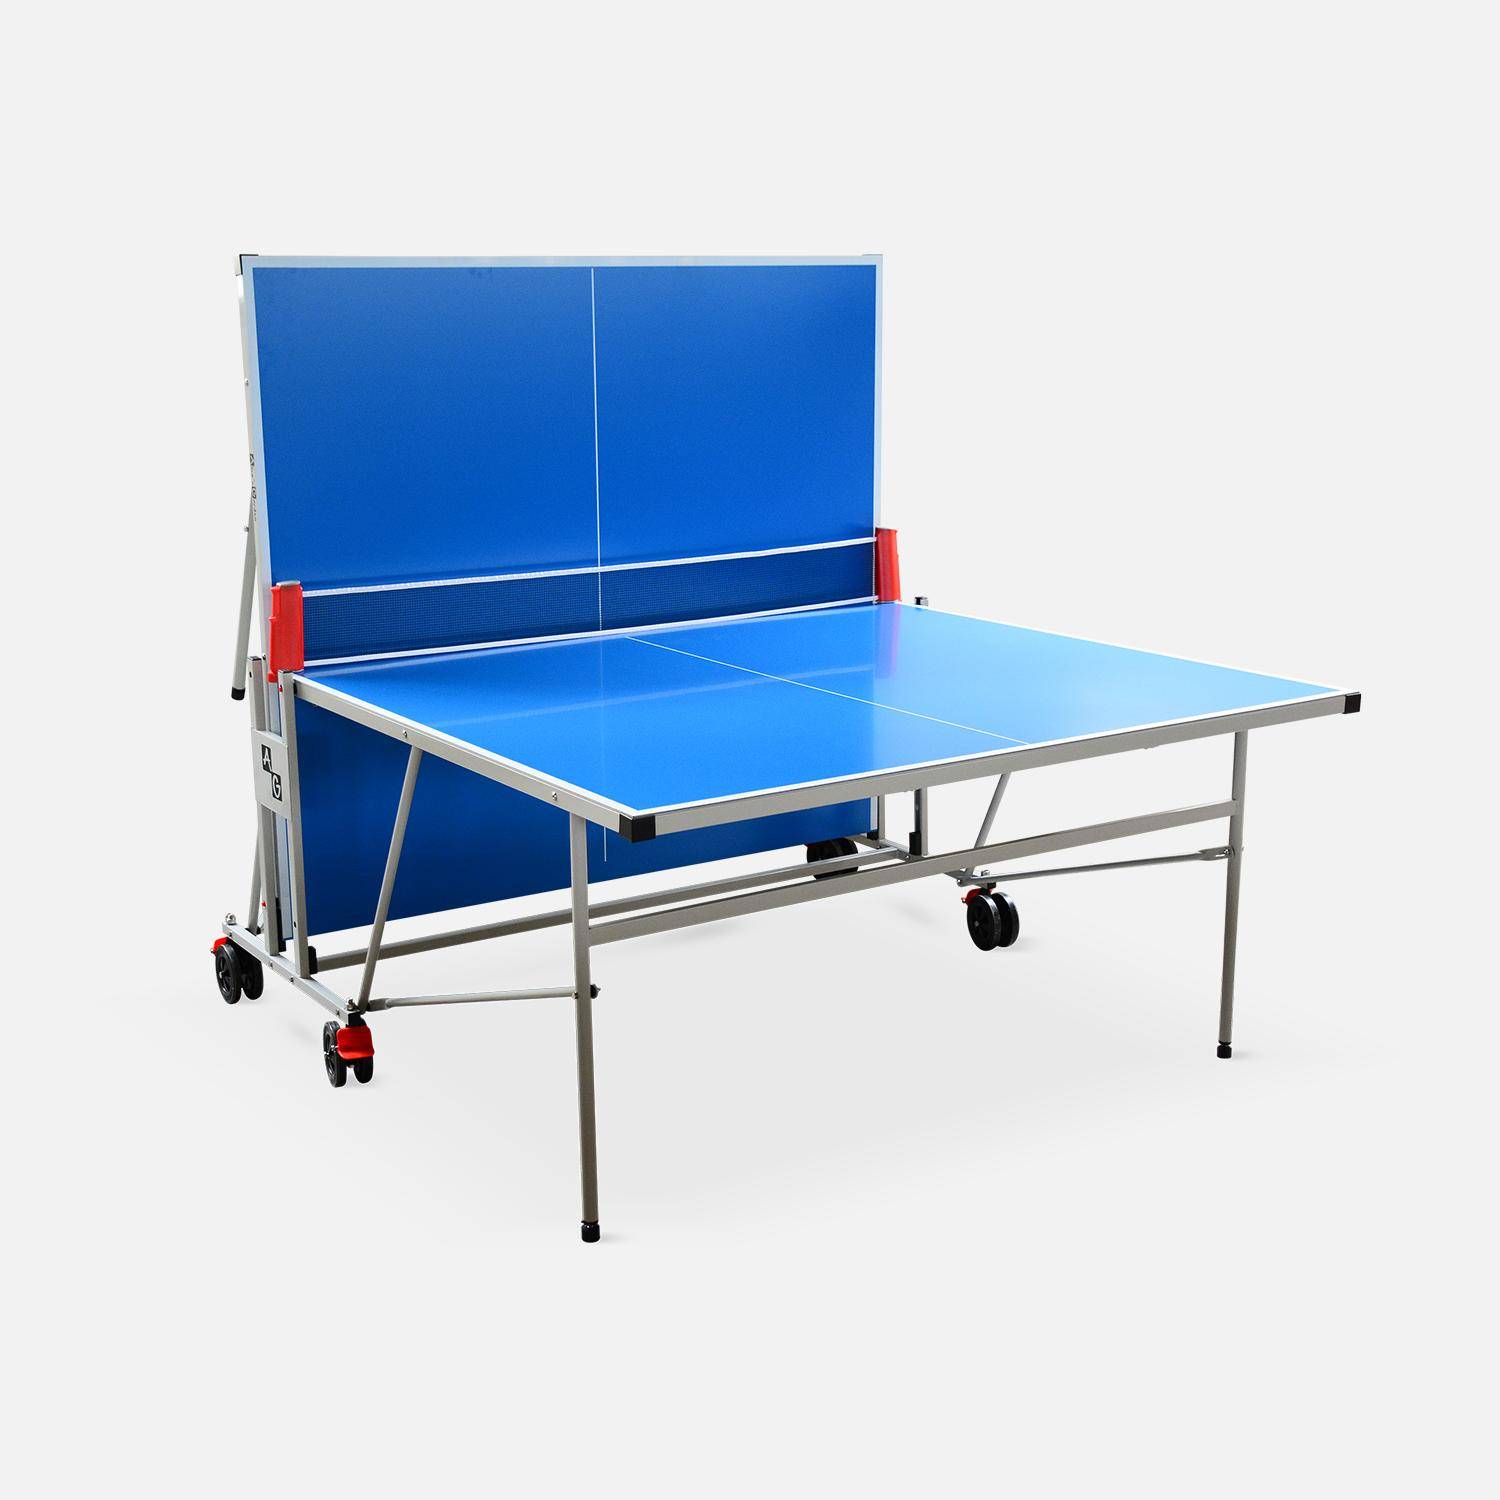 Table de ping pong OUTDOOR bleue - table pliable avec 2 raquettes et 3 balles, pour utilisation extérieure, sport tennis de table Photo2